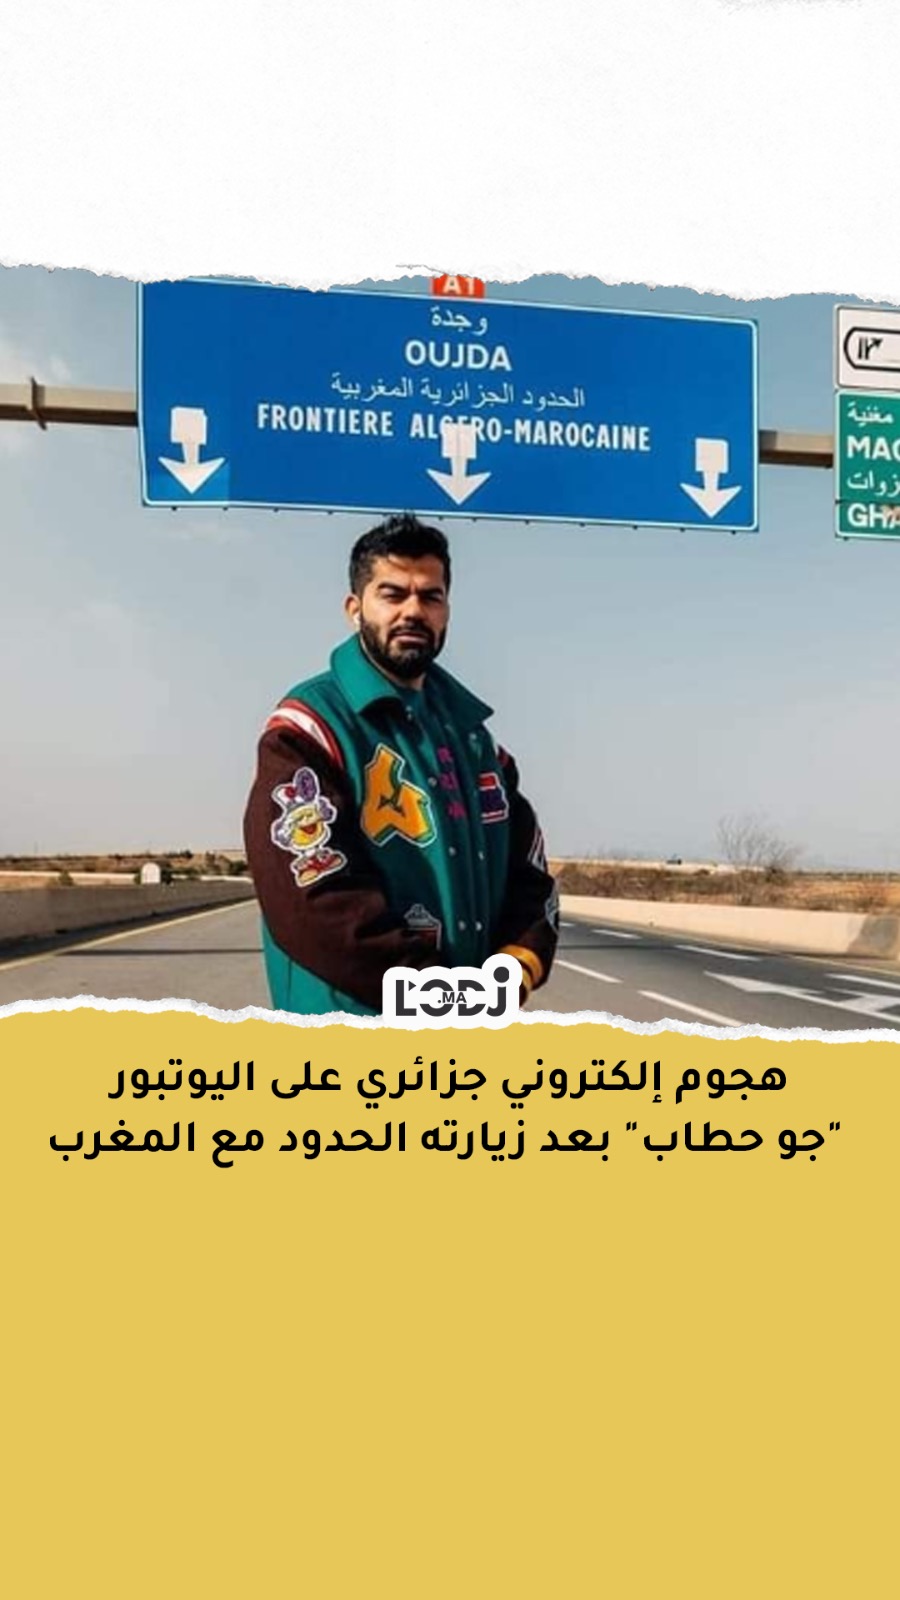 هجوم إلكتروني جزائري على اليوتبور "جو حطاب" بعد زيارته الحدود مع المغرب